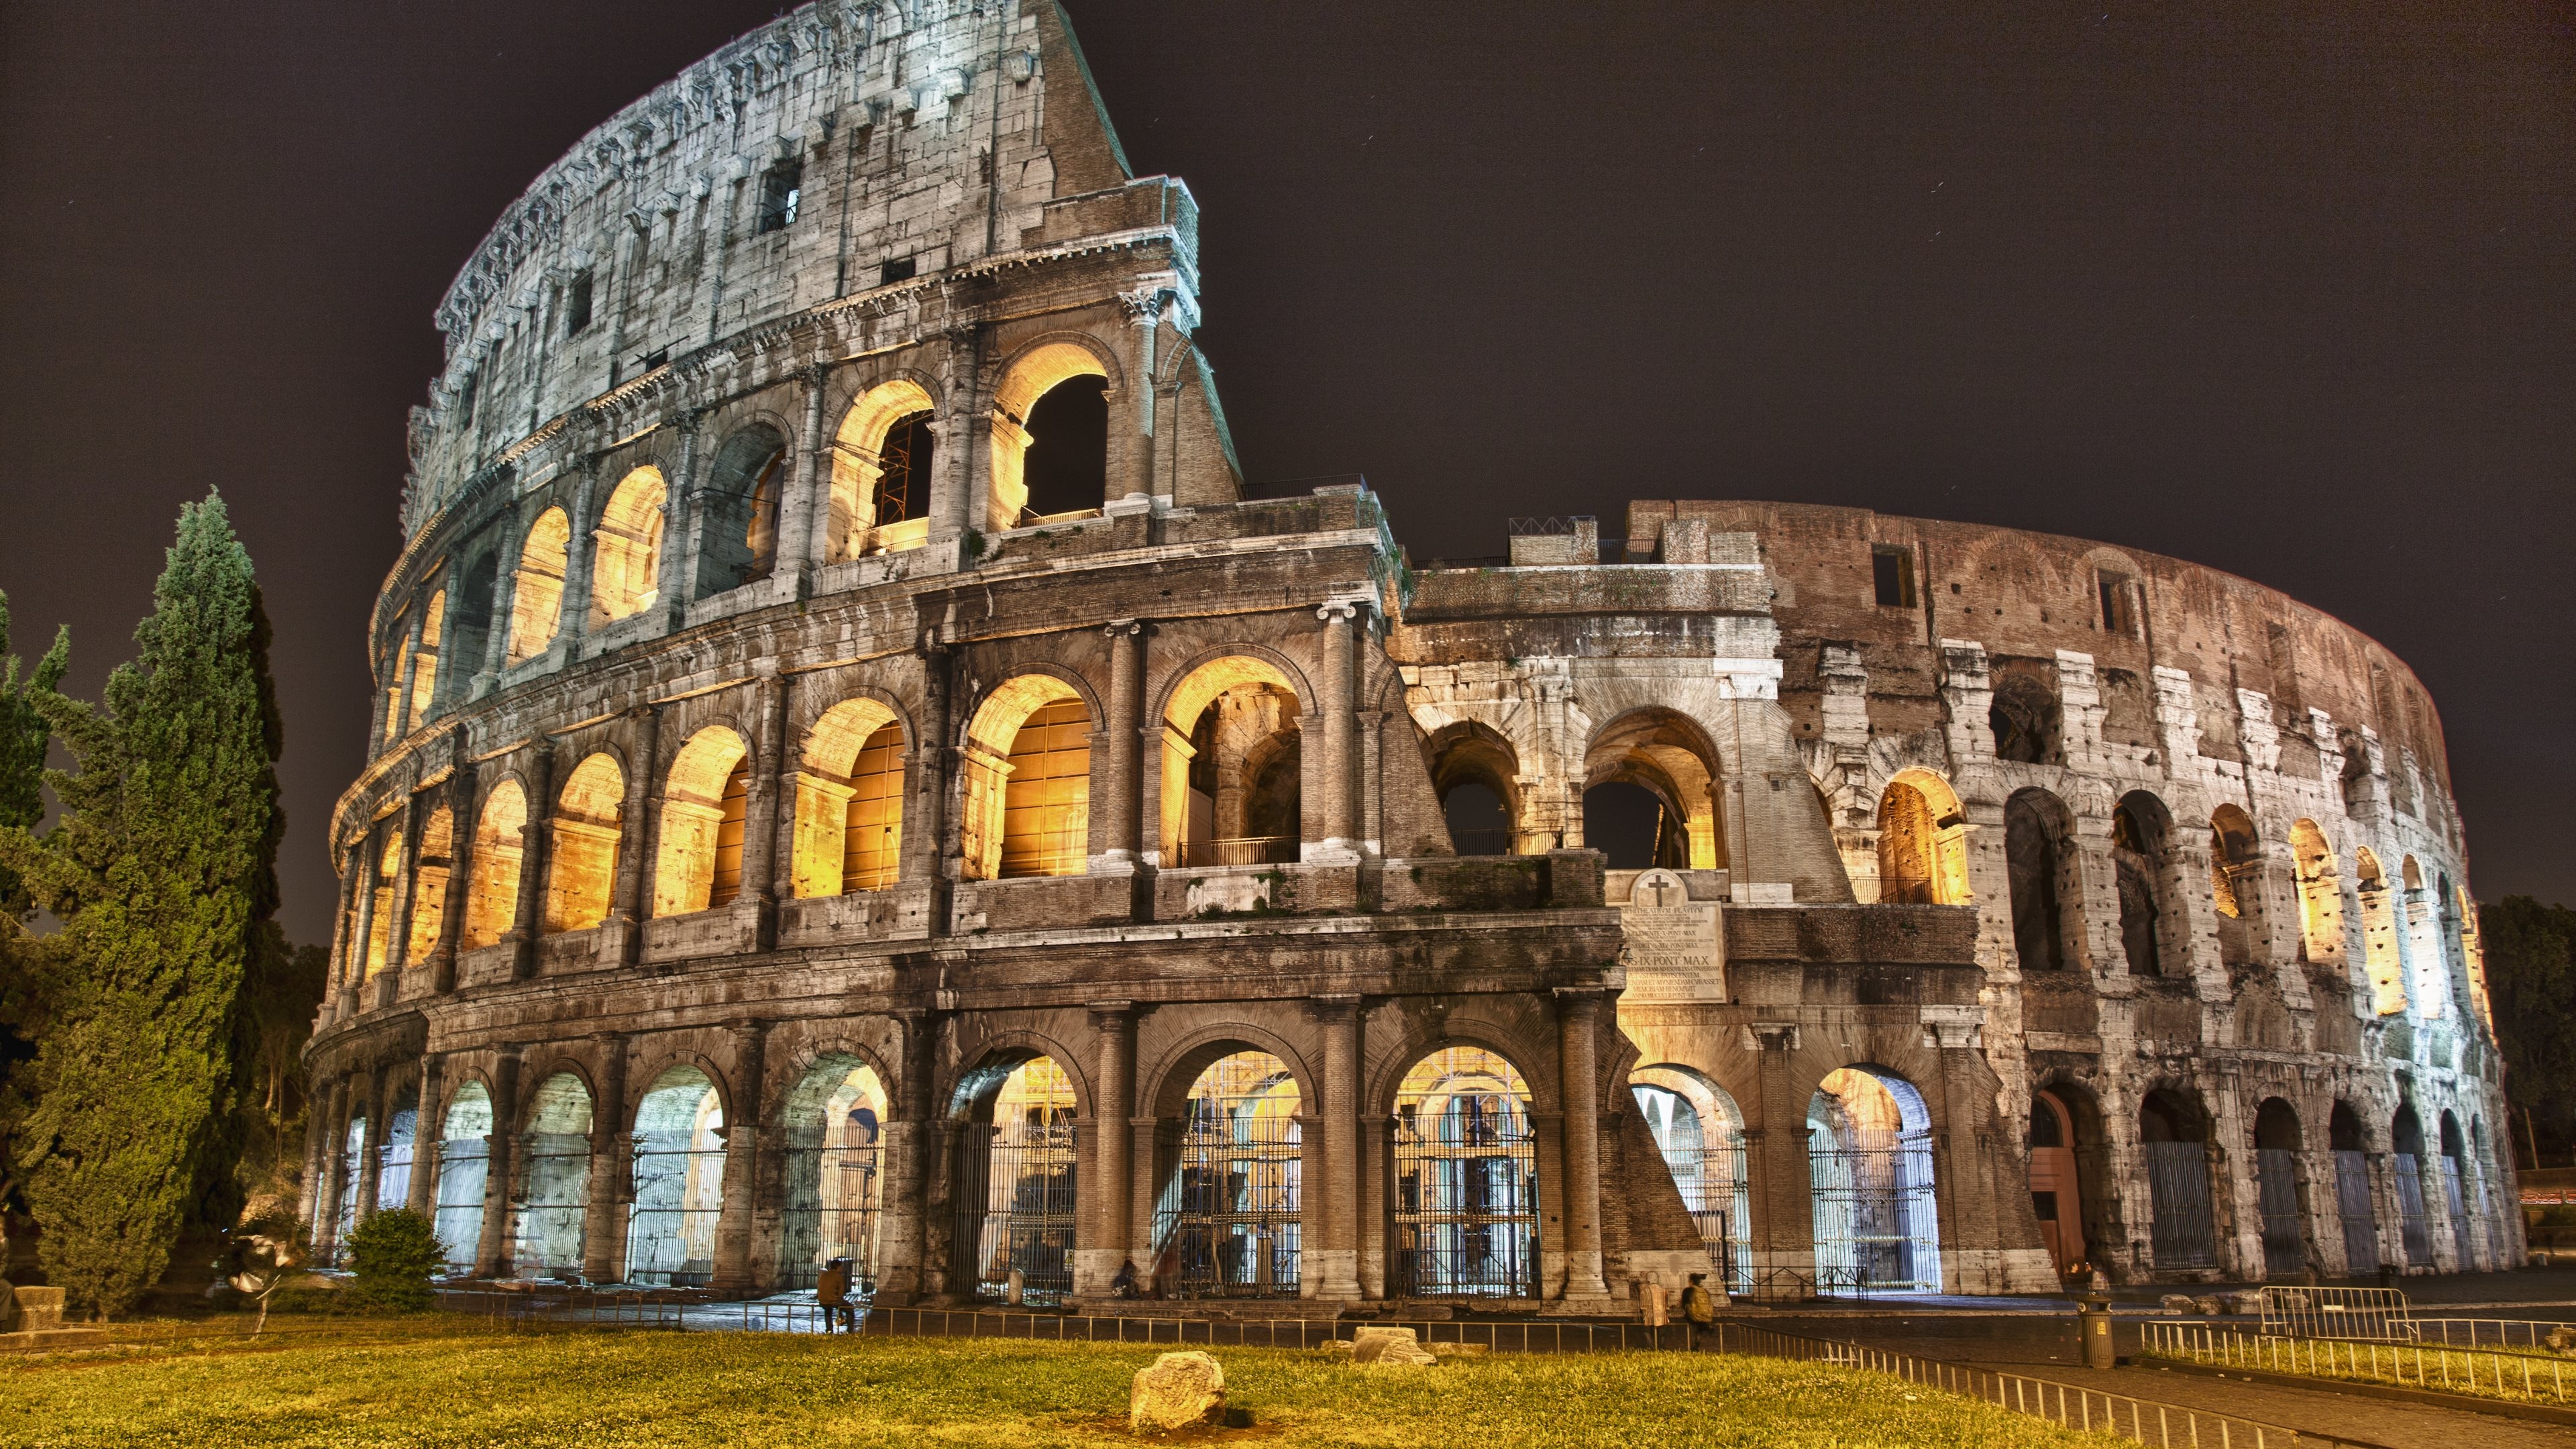 Colosseum grandeur, Architectural masterpiece, Ancient amphitheater, Roman history, 3840x2160 4K Desktop